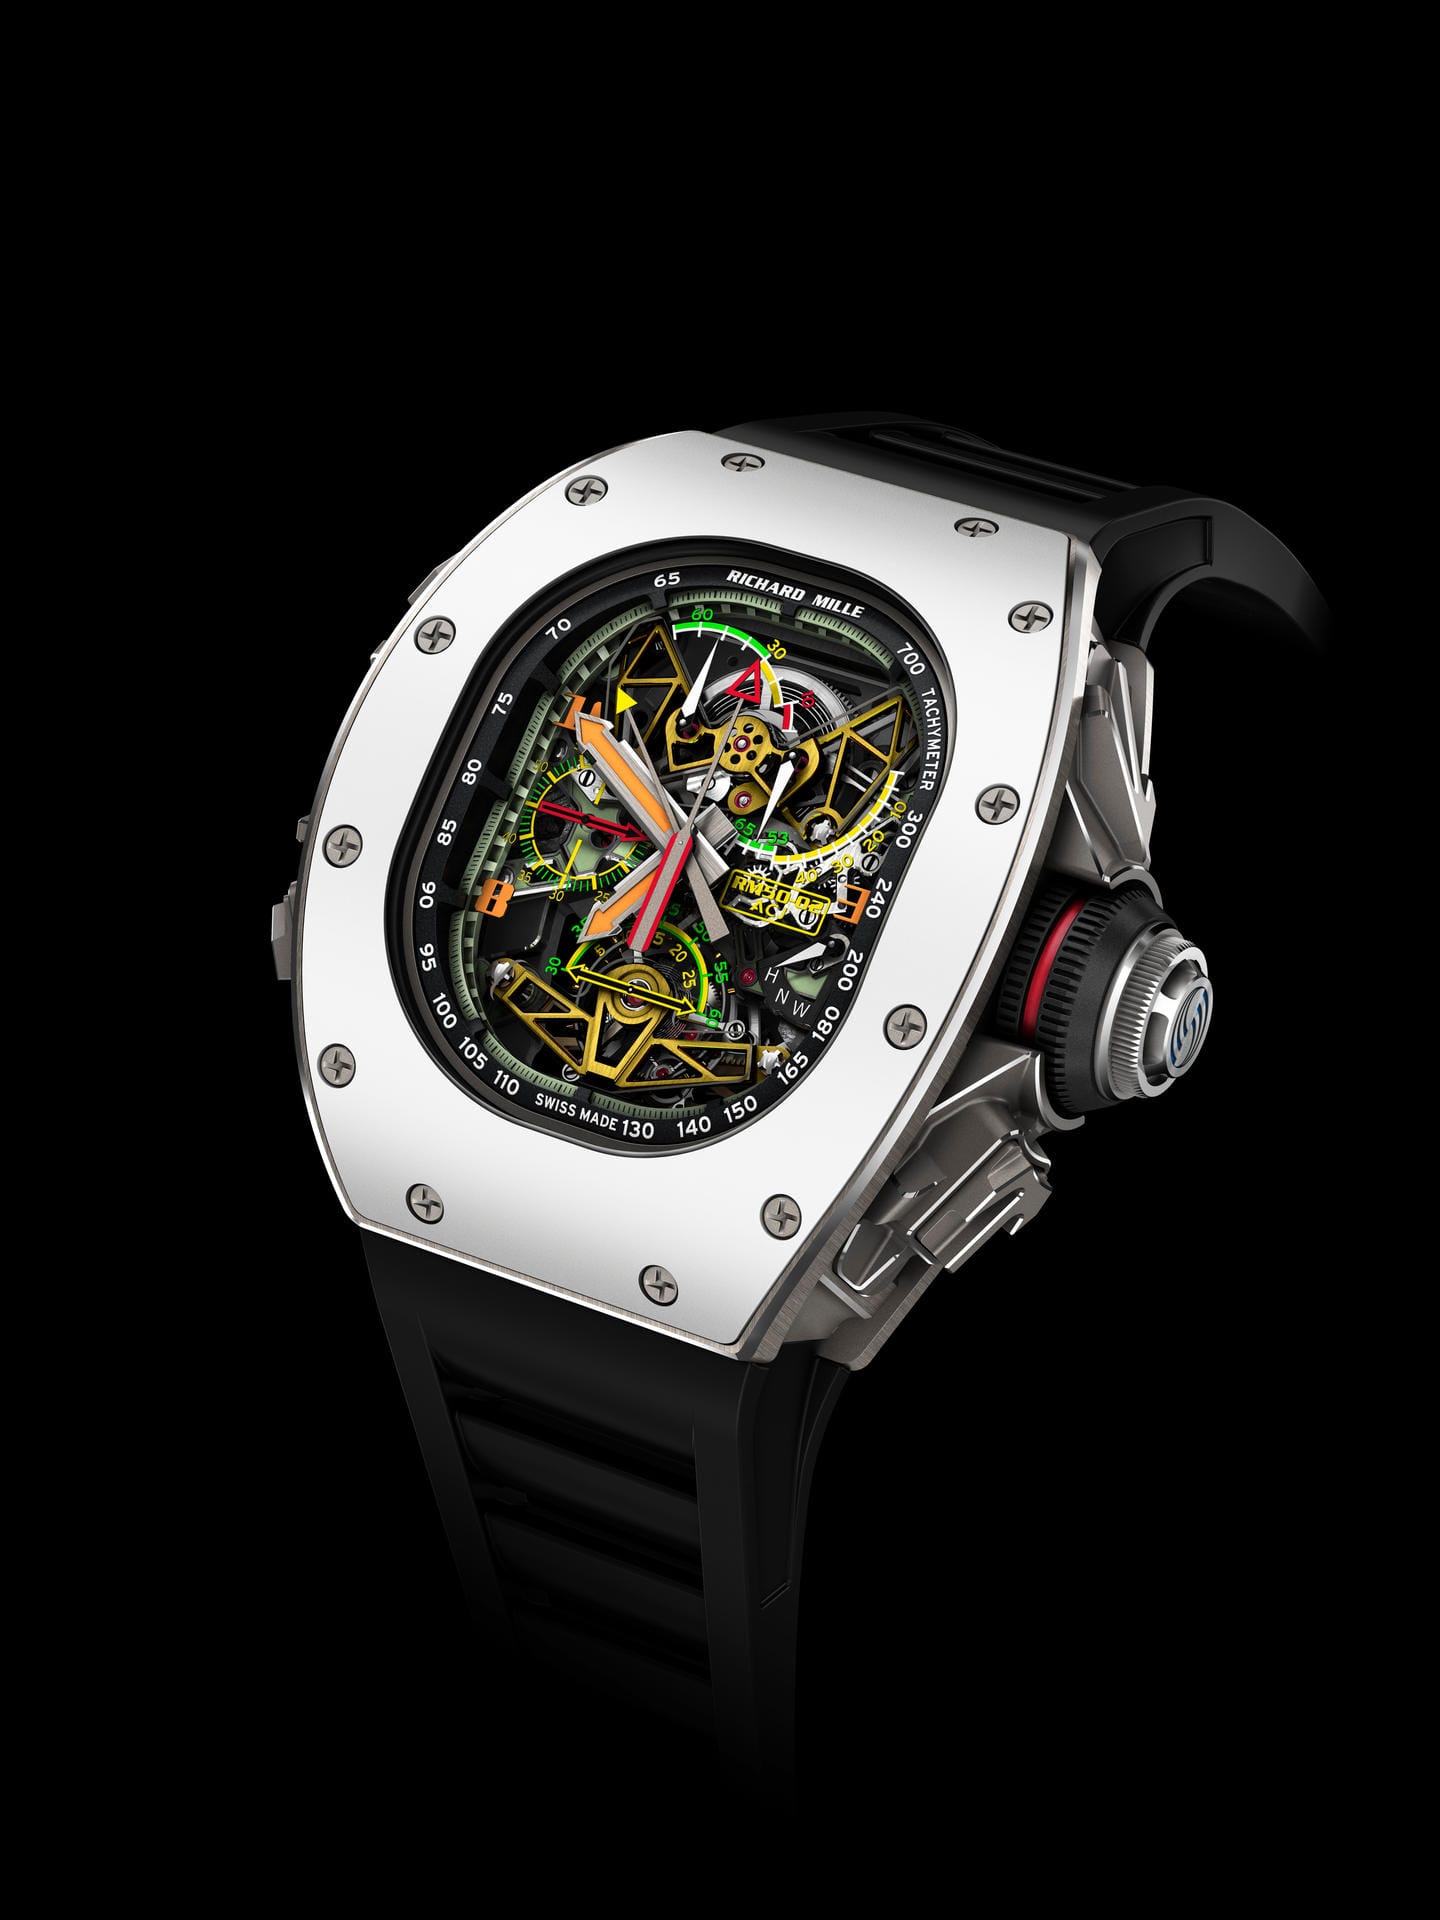 Von Richard Mille stammt die RM 50-02 ACJ Tourbillon Split Seconds Chronograph. Knapp über eine Millionen US-Dollar kostet die Uhr, die in Kooperation mit Airbus Corporate Jets entstand.